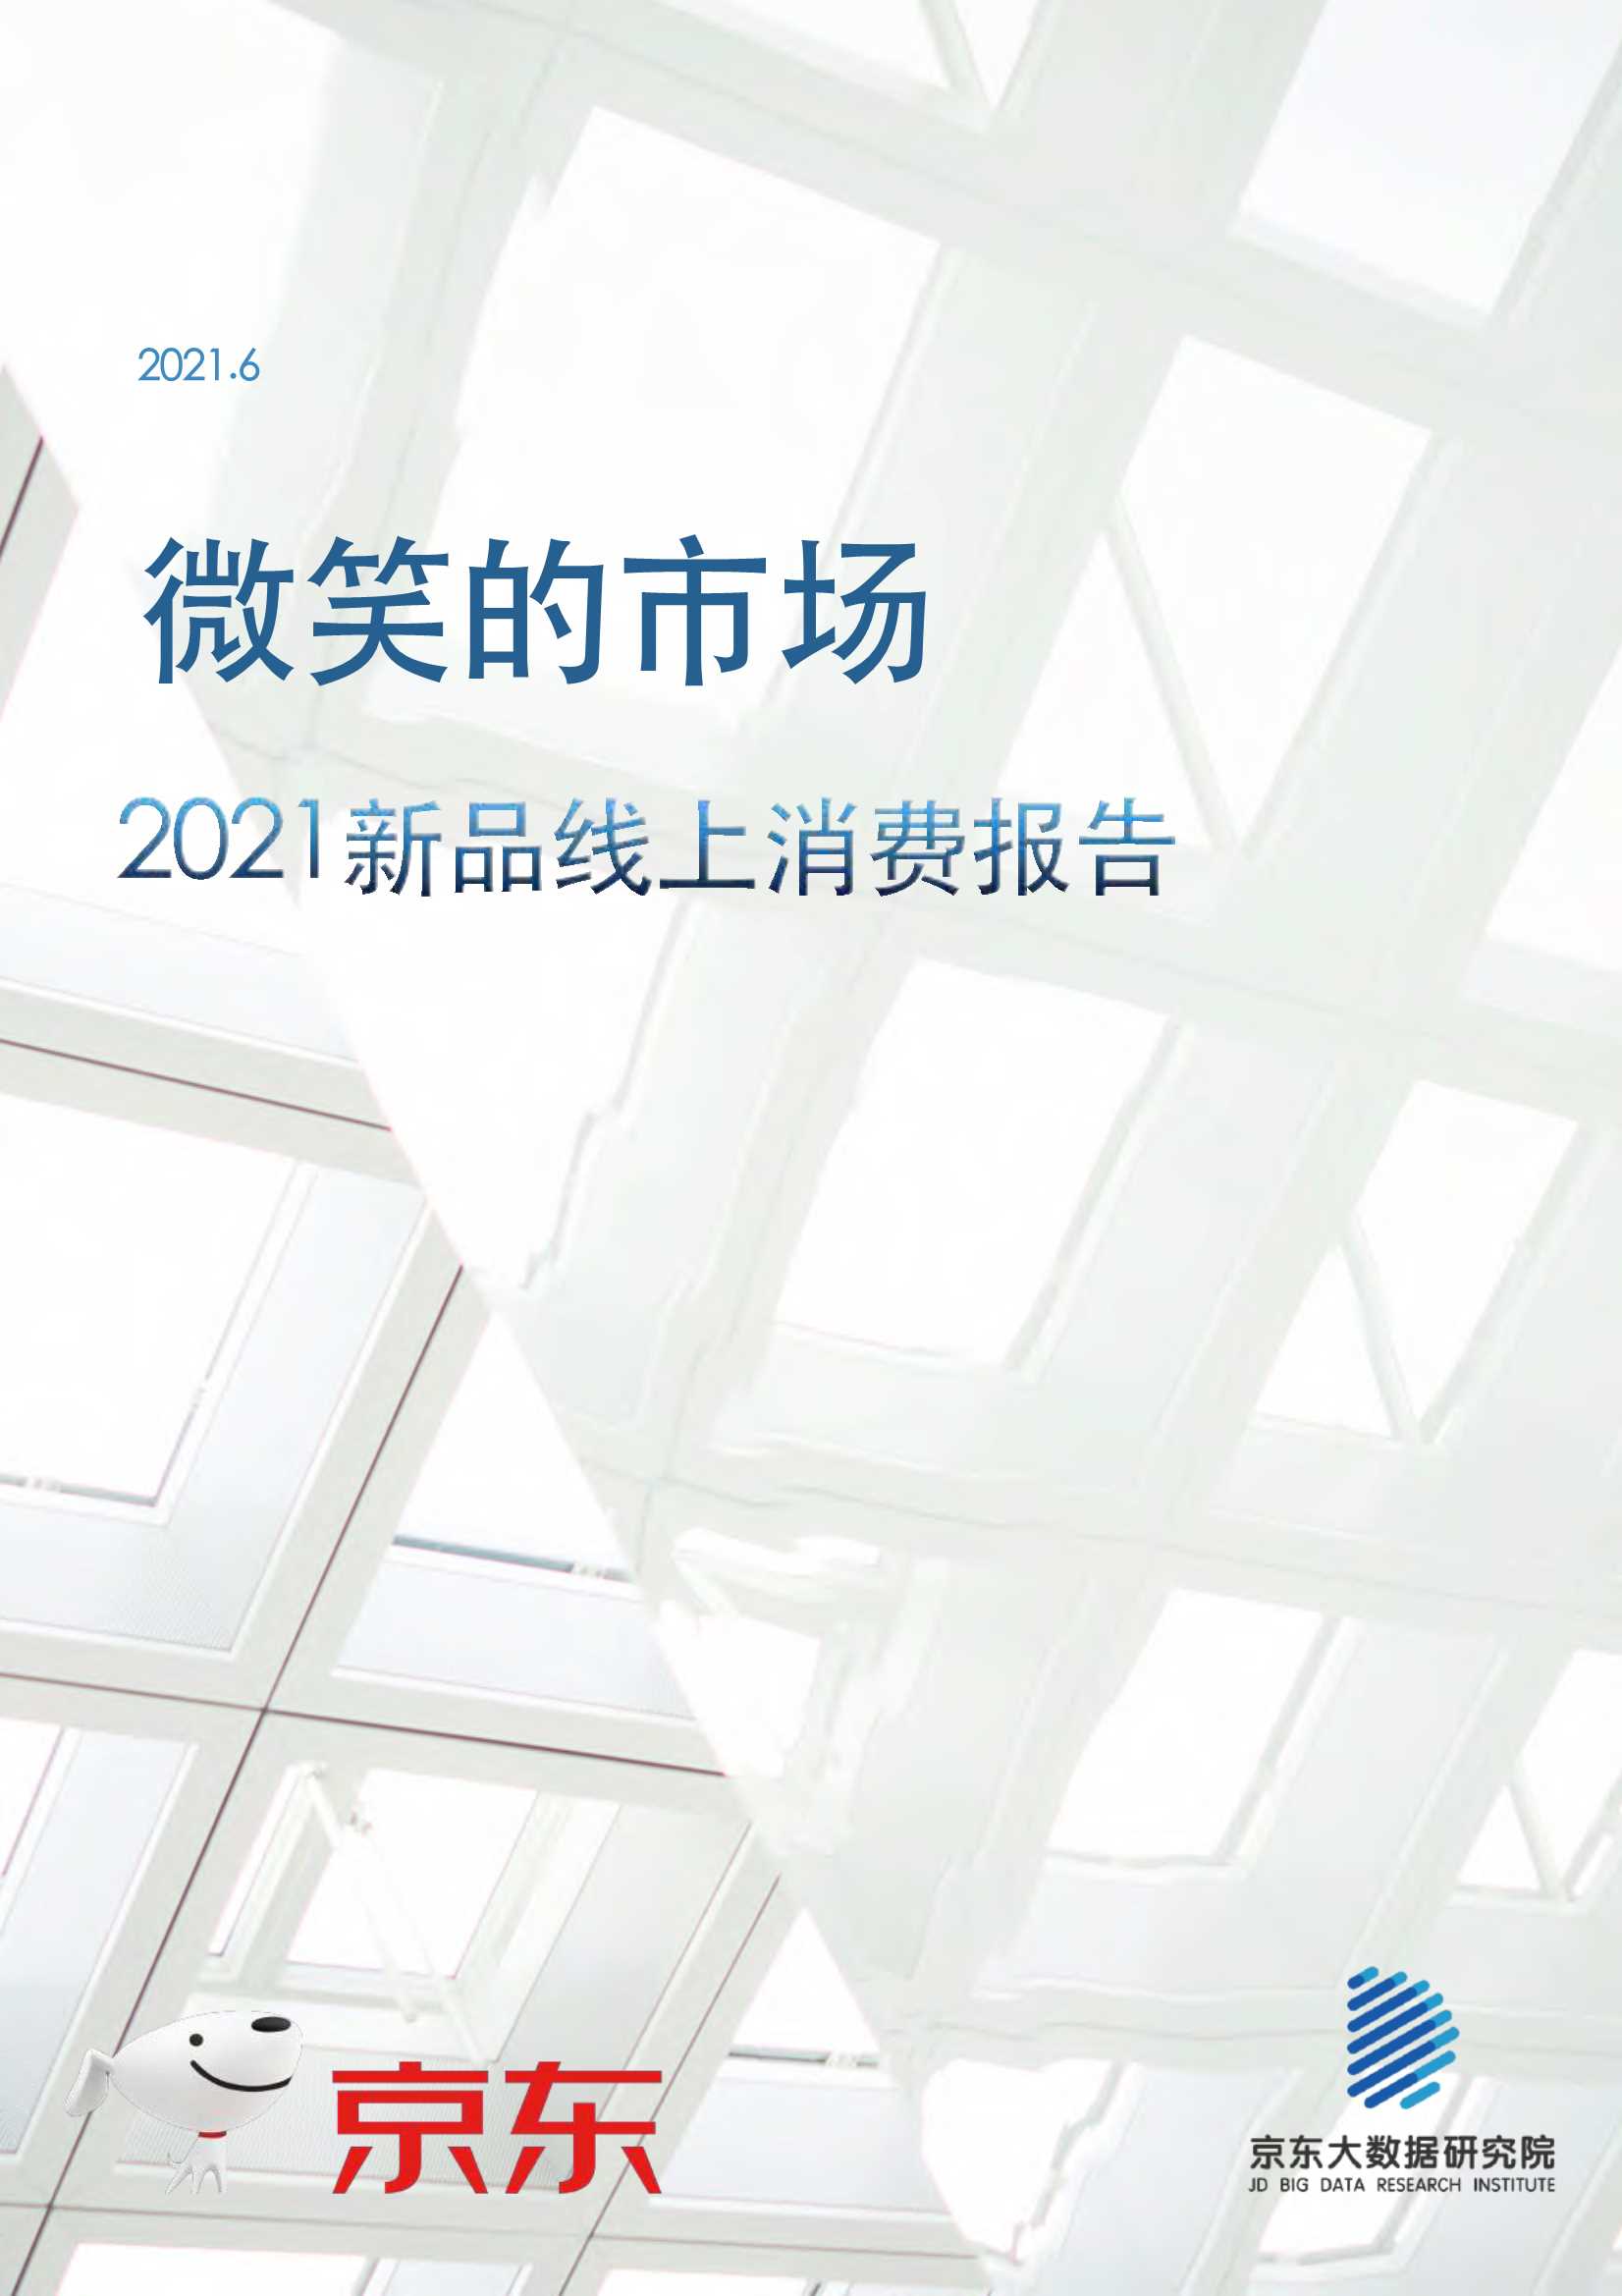 京东大数据研究院-2021新品线上消费报告：微笑的市场-2021.06-28页